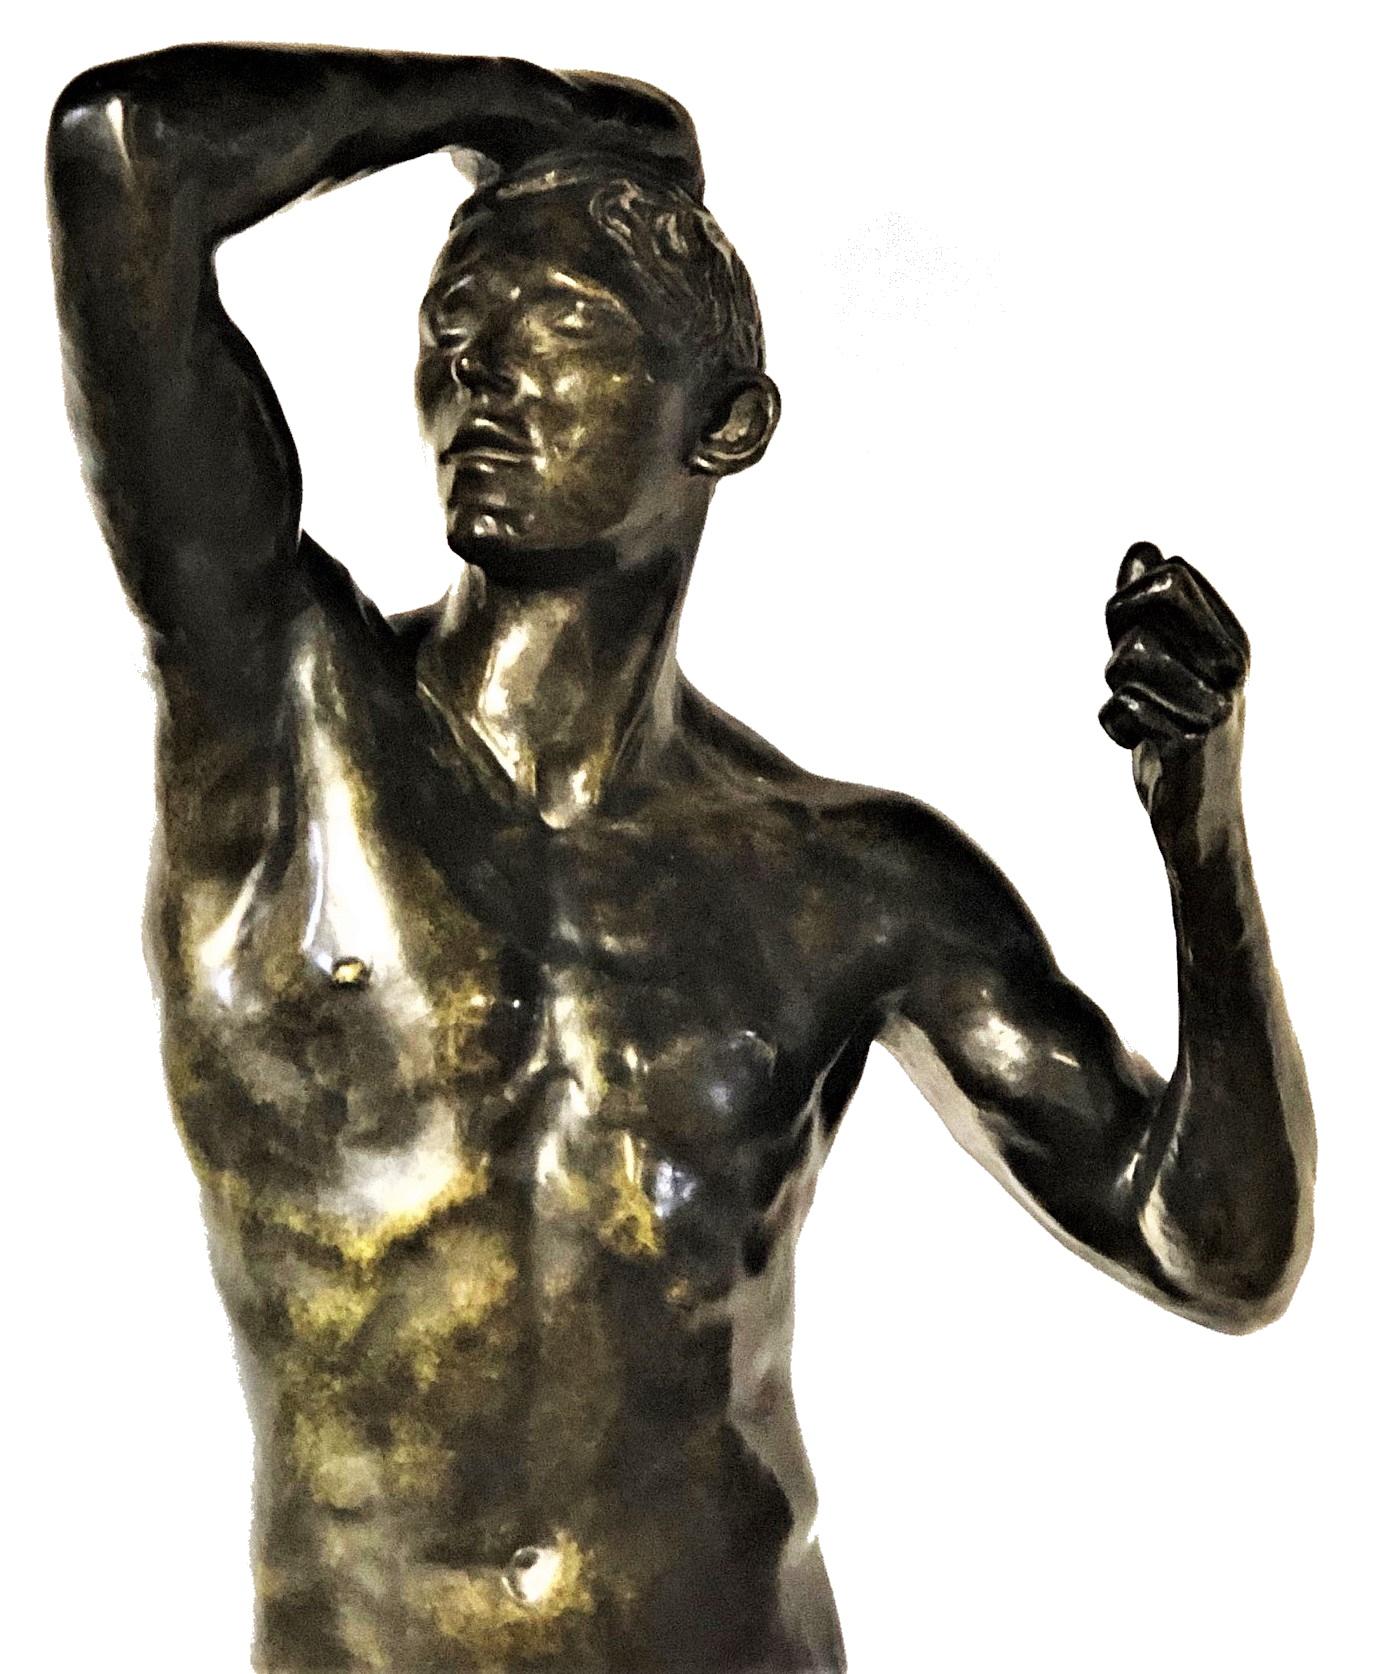 Auguste Rodin
Bronzezeit
Patinierte Bronze-Skulptur Re-Guss
XX Jahrhundert

ÜBER DAS KUNSTWERK
Rodins bahnbrechende Skulptur Das Zeitalter der Bronze (L'Age d'airain) löste wegen ihres extremen Naturalismus und ihrer zweideutigen Thematik einen